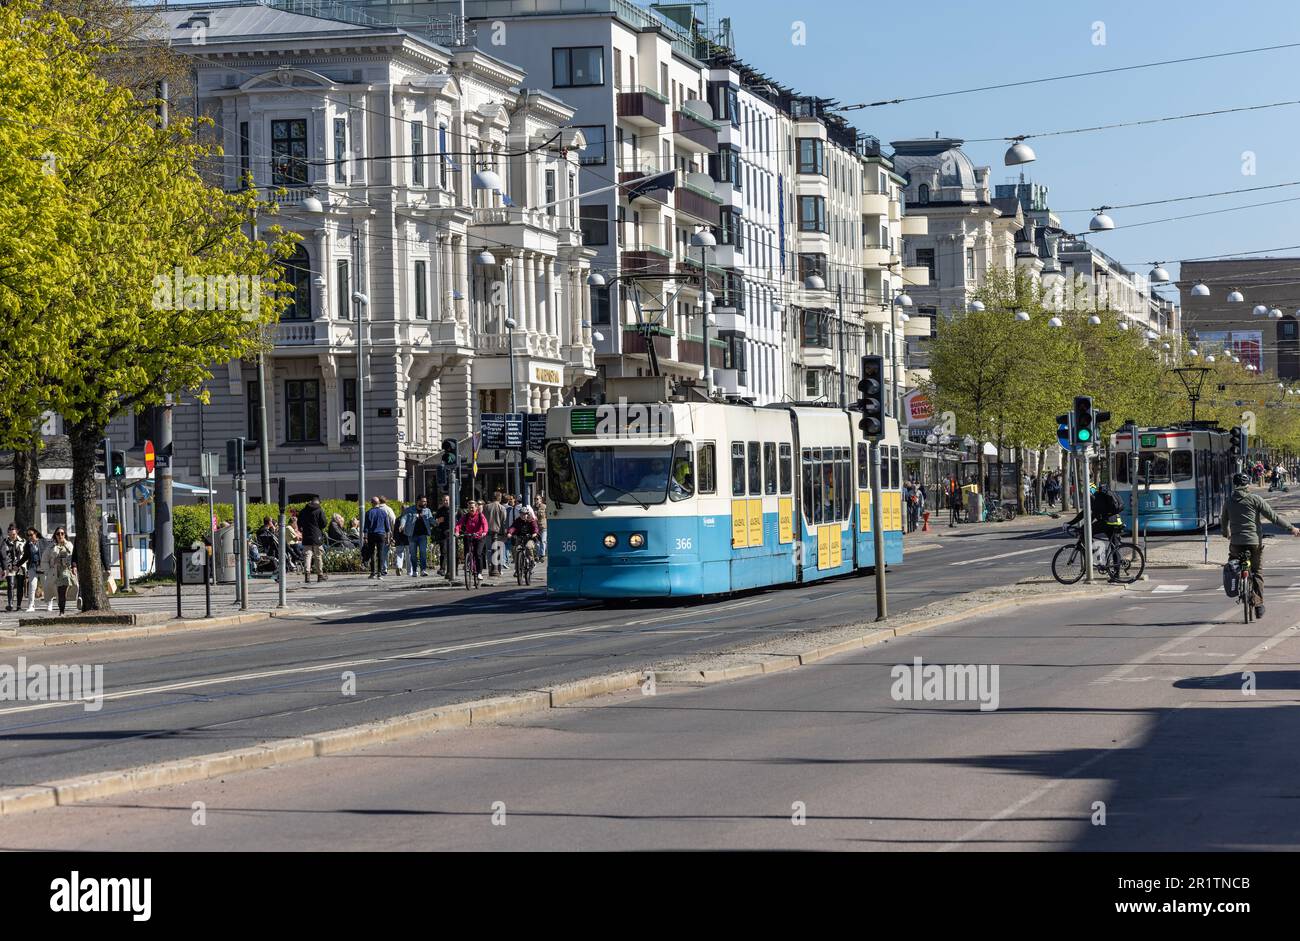 Straßenbahn in Kungsportsavenyen auch Avenym eine beliebte, trendige, lebhafte Straße mit Bars, Hotels, Geschäften und Restaurants. Göteborg zum 400. Geburtstag. Stockfoto